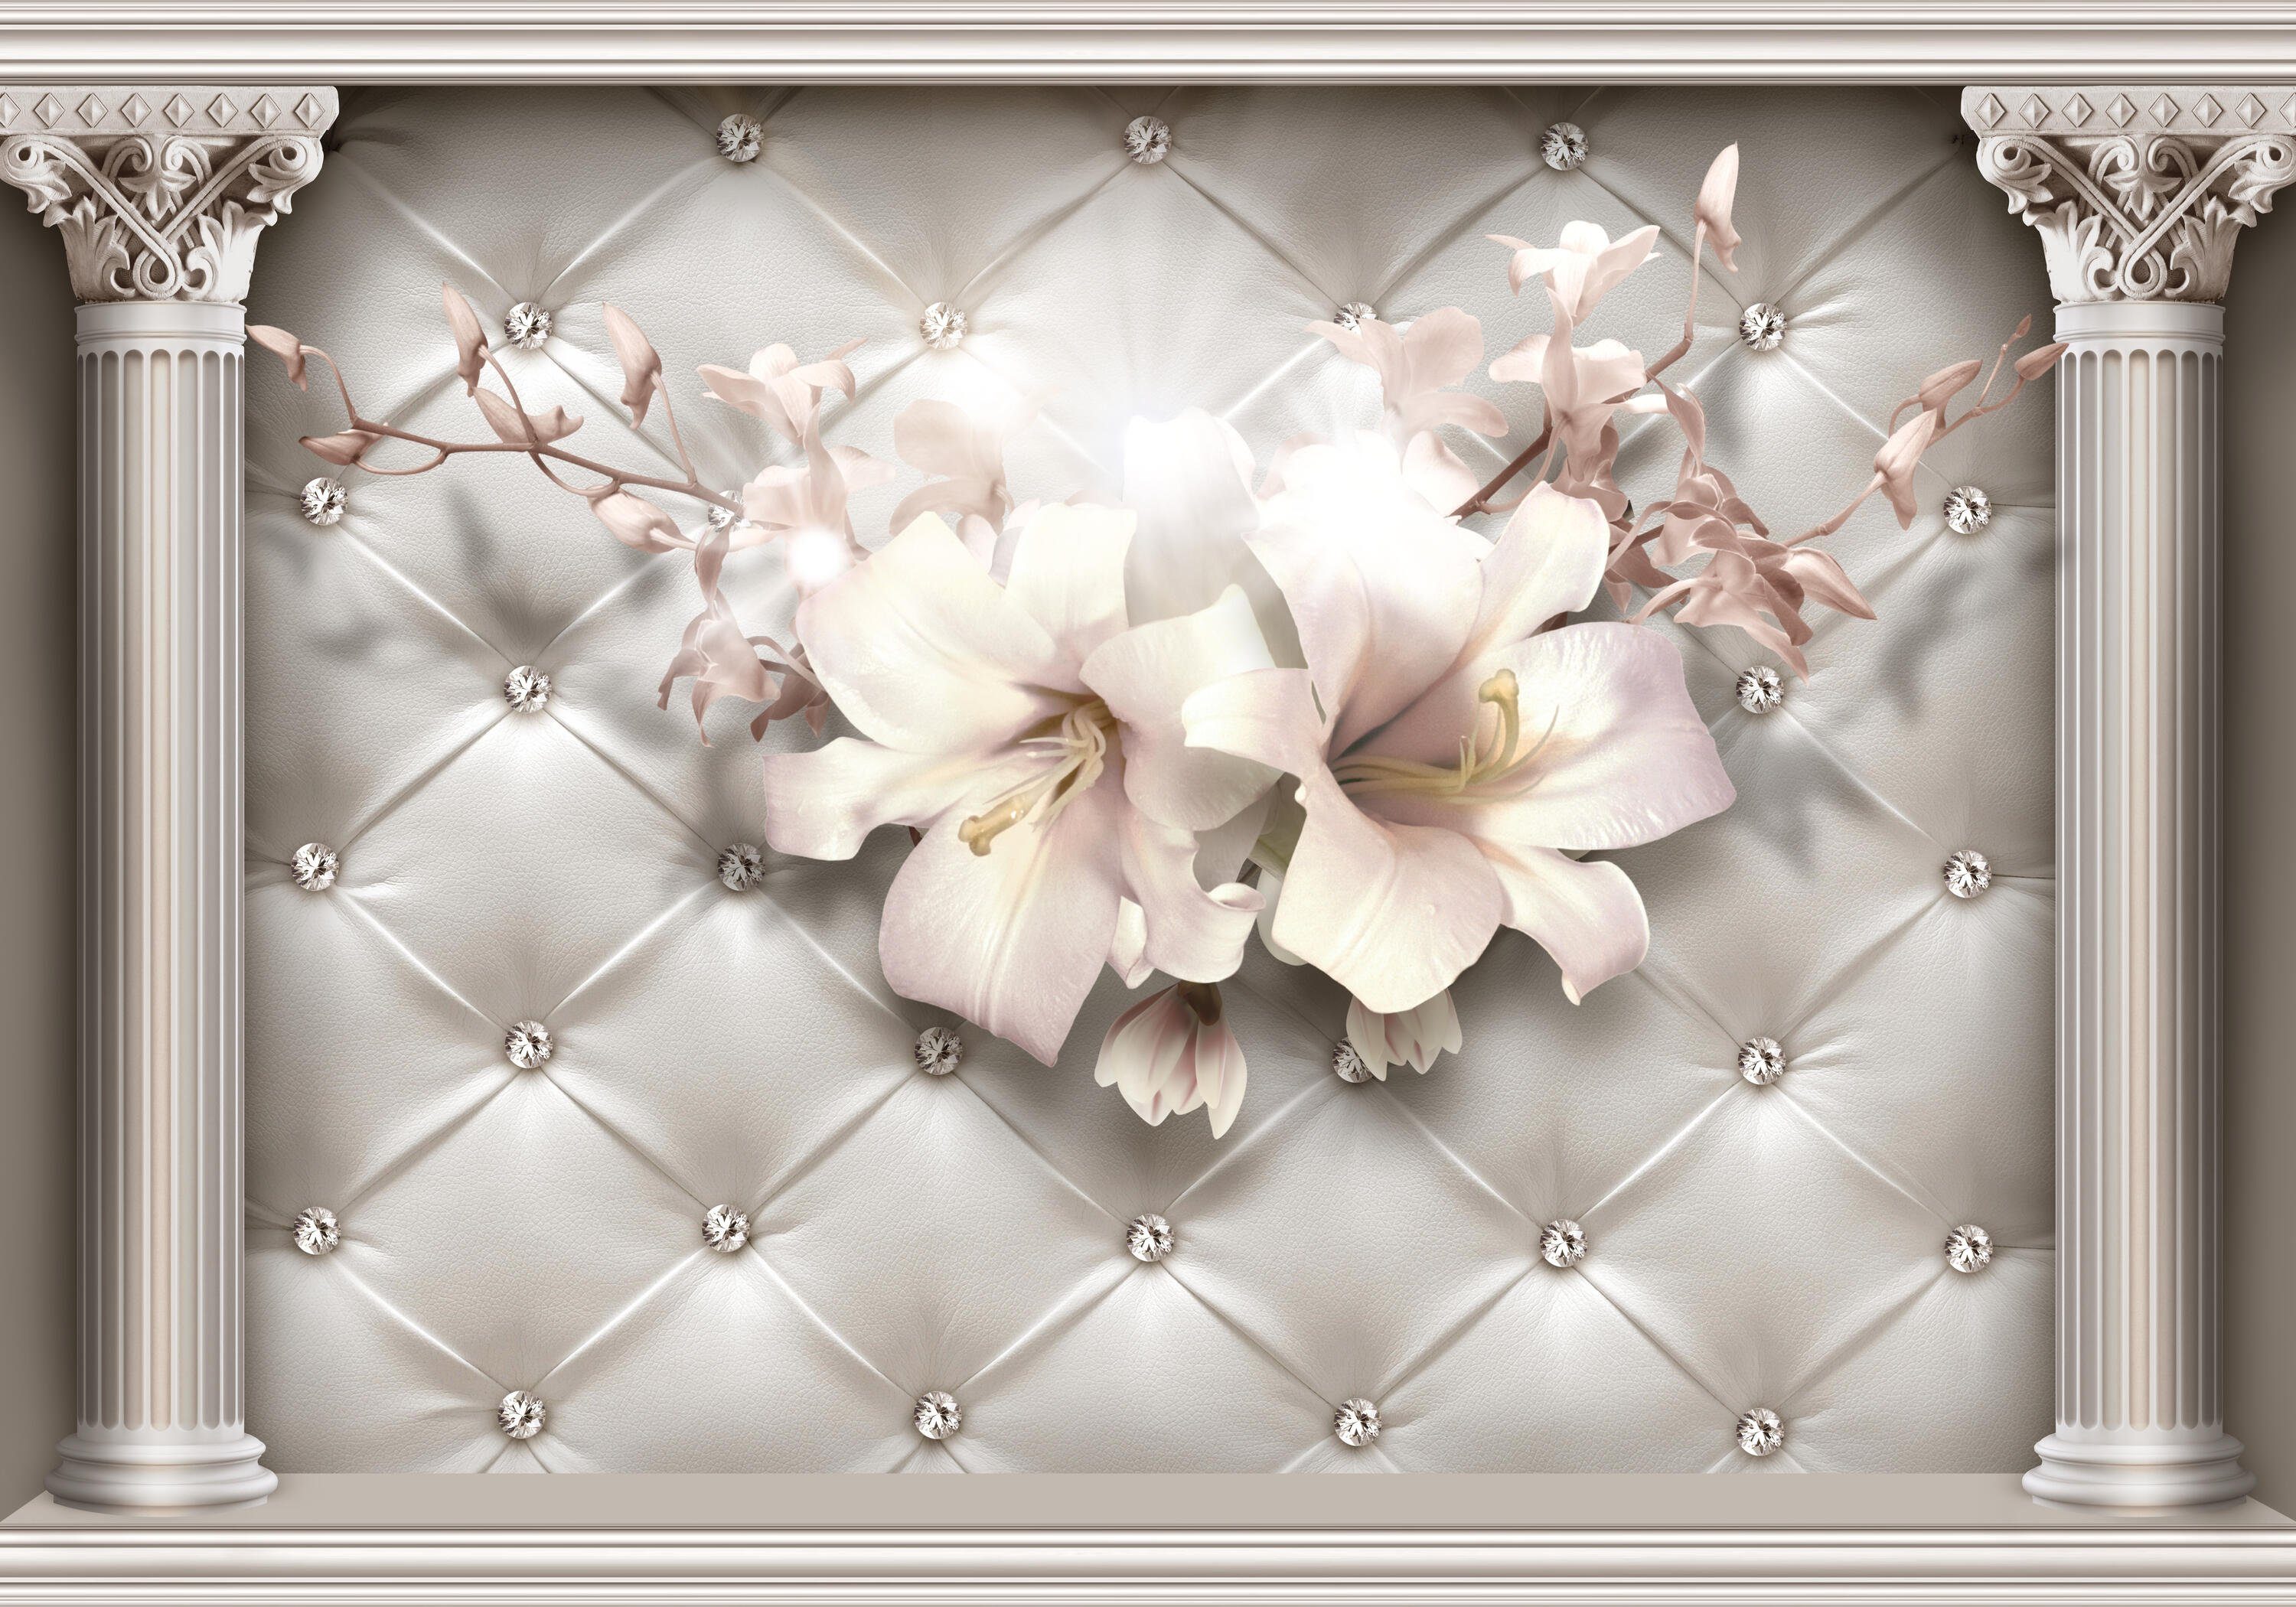 Motivtapete, glatt, Blüten Wandtapete, Fototapete Vliestapete matt, wandmotiv24 3D Säulen Diamanten, Effekt